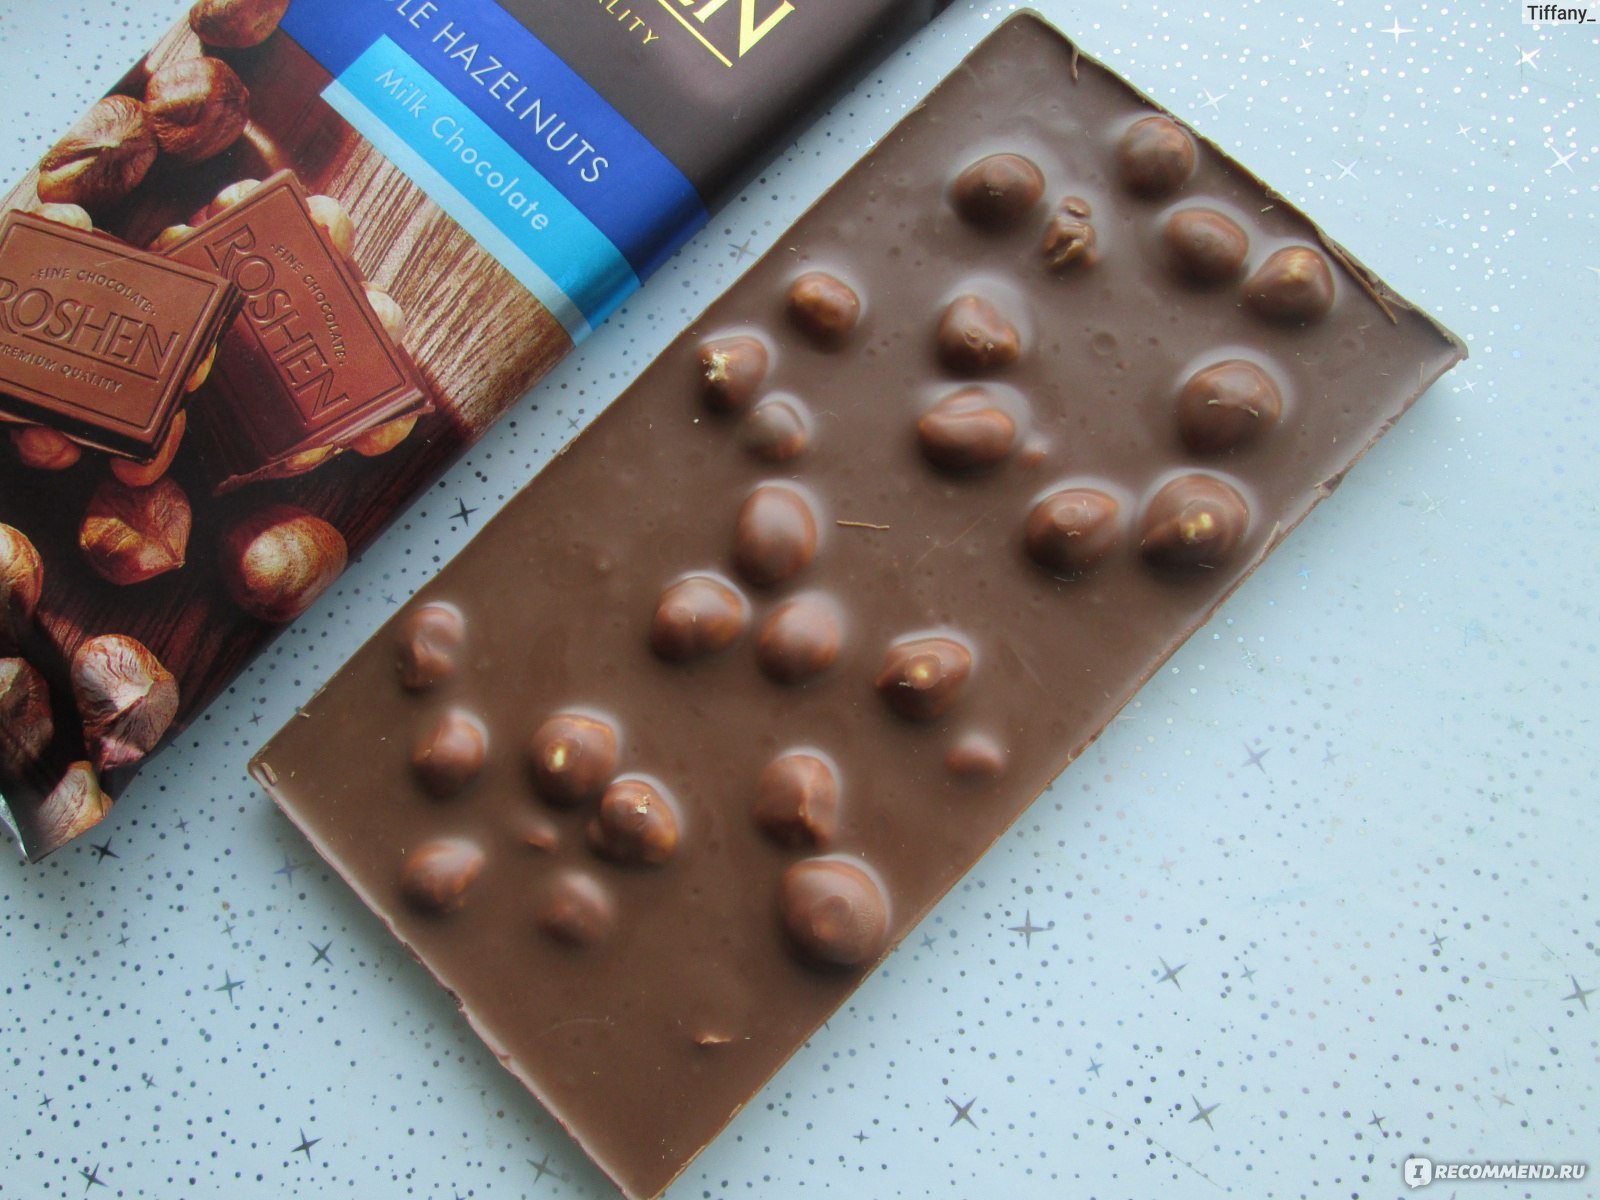 Шоколад Ludwig Weinrich's молочный с цельным фундуком, 31% какао